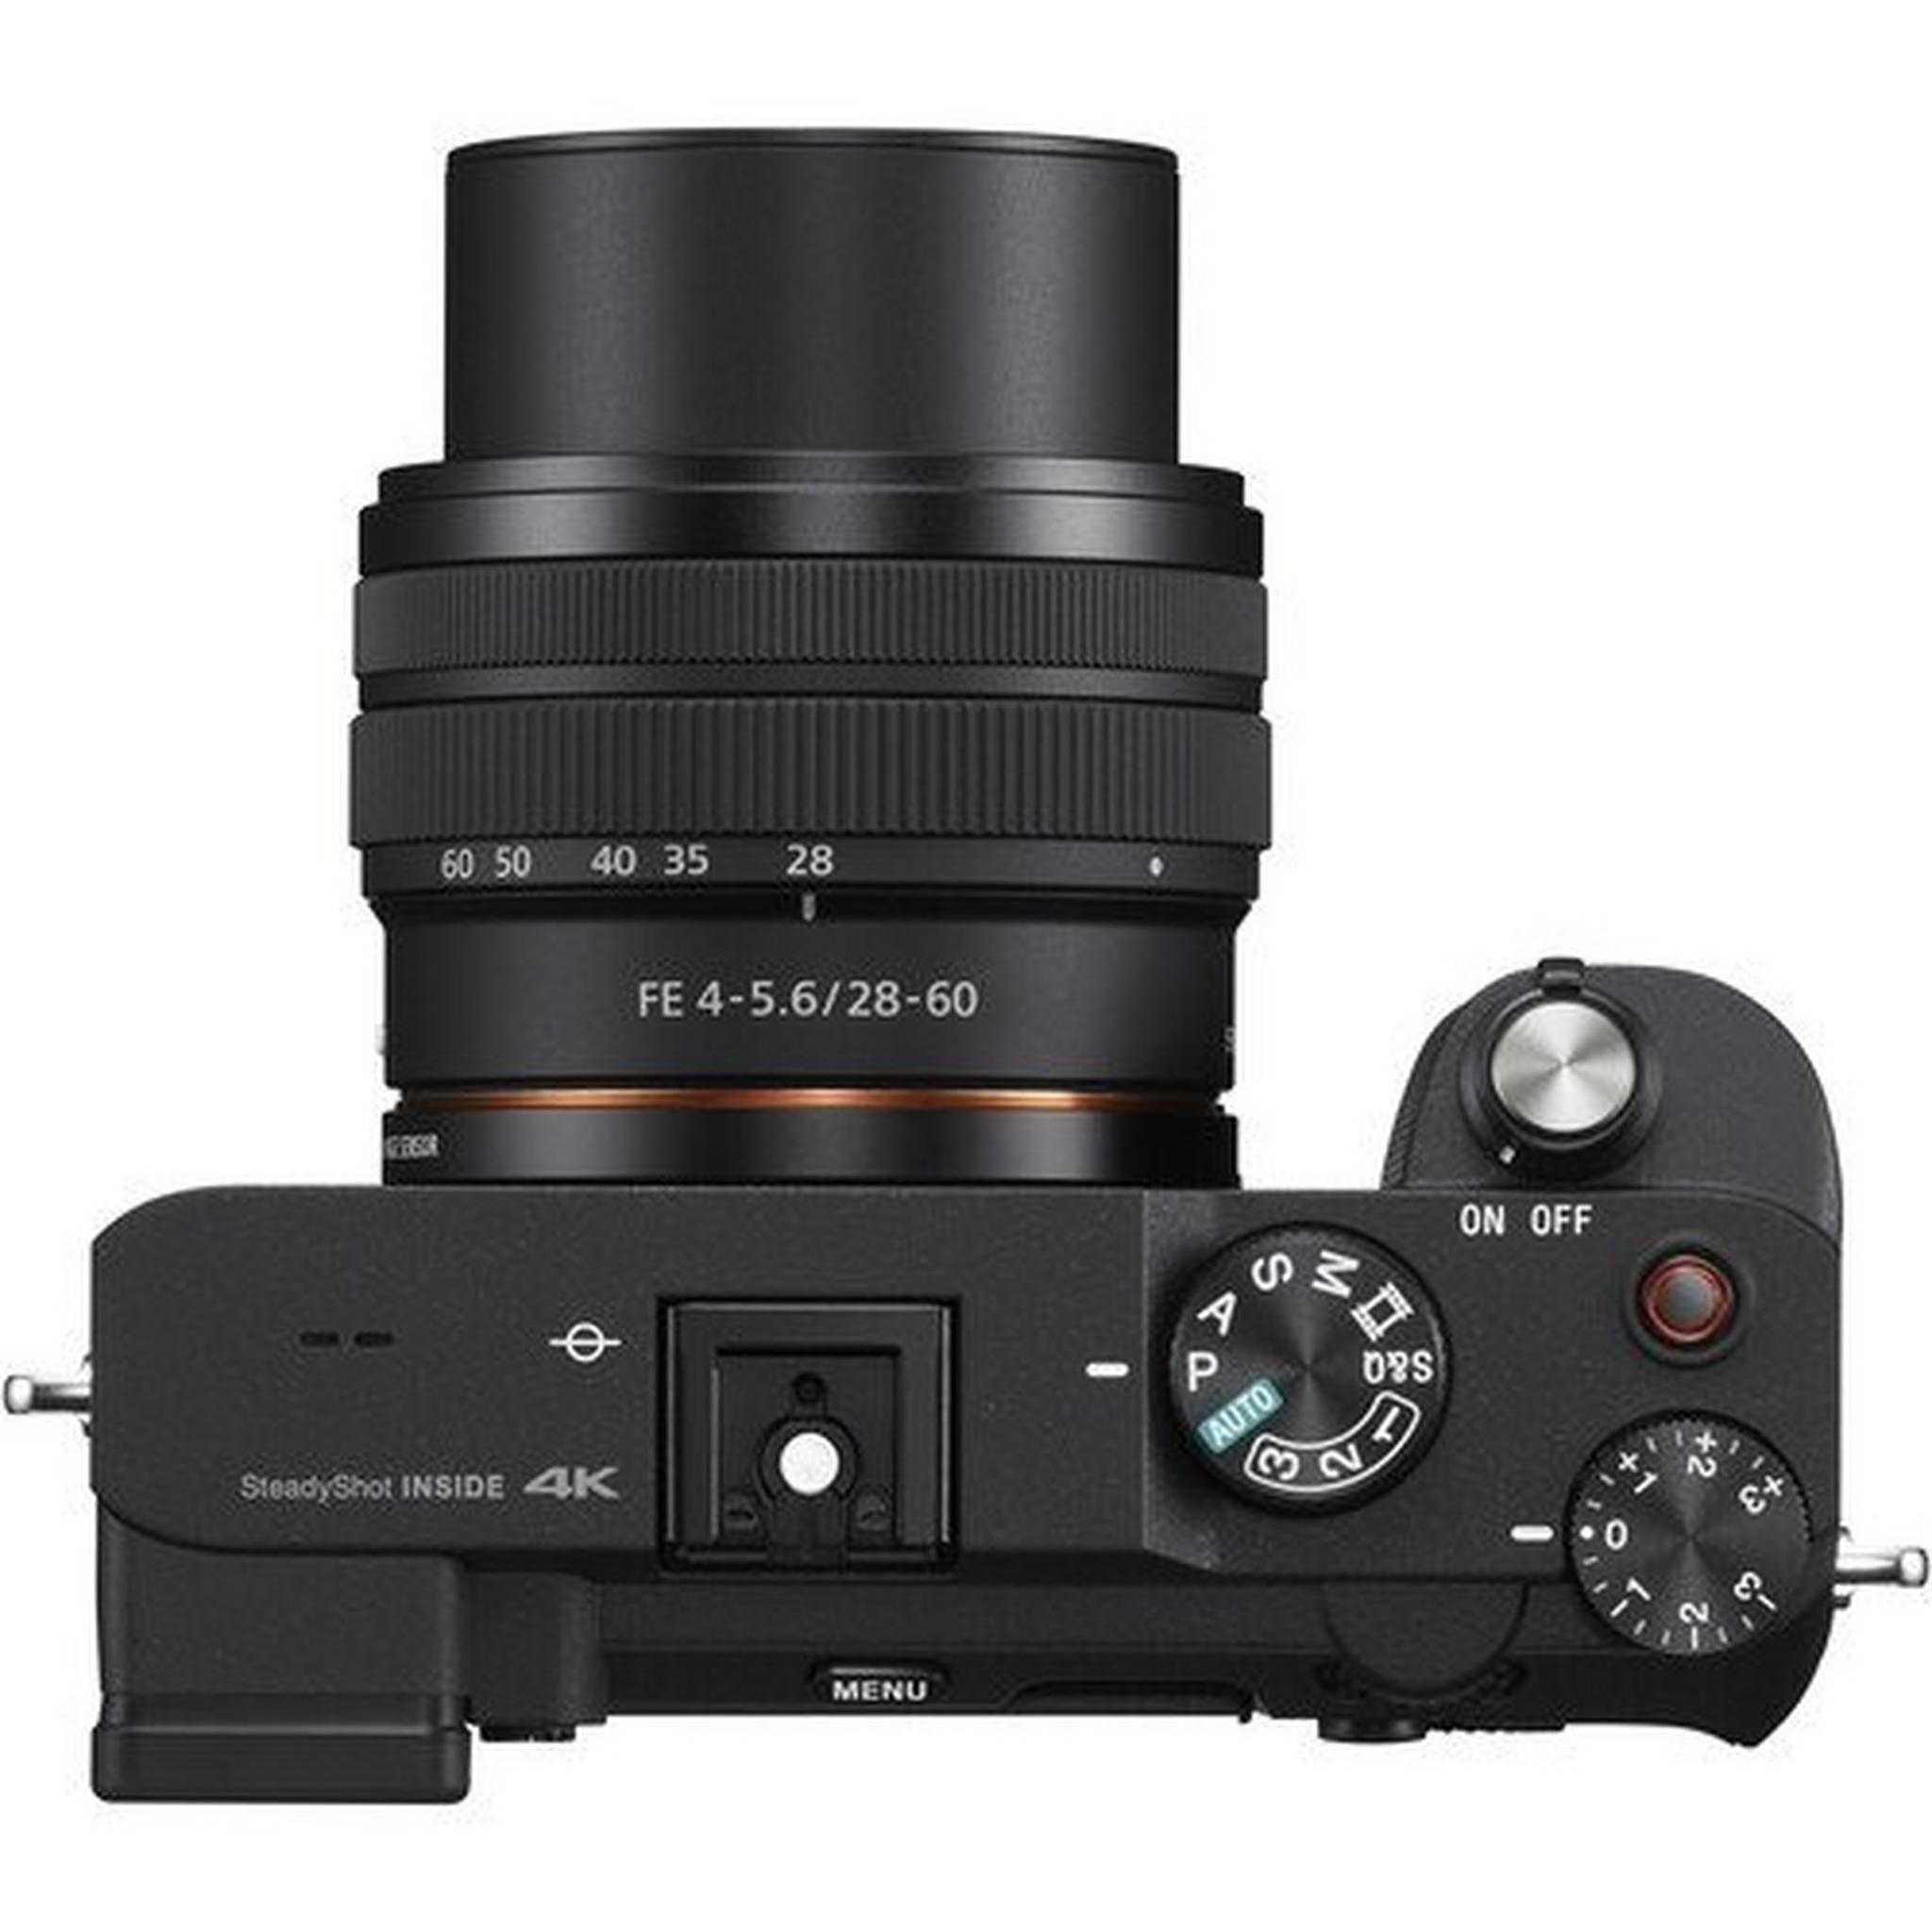 كاميرا سوني الفا ايه 7 سي الرقمية بدون مرآه مع عدسة 28-60 ملم - أسود